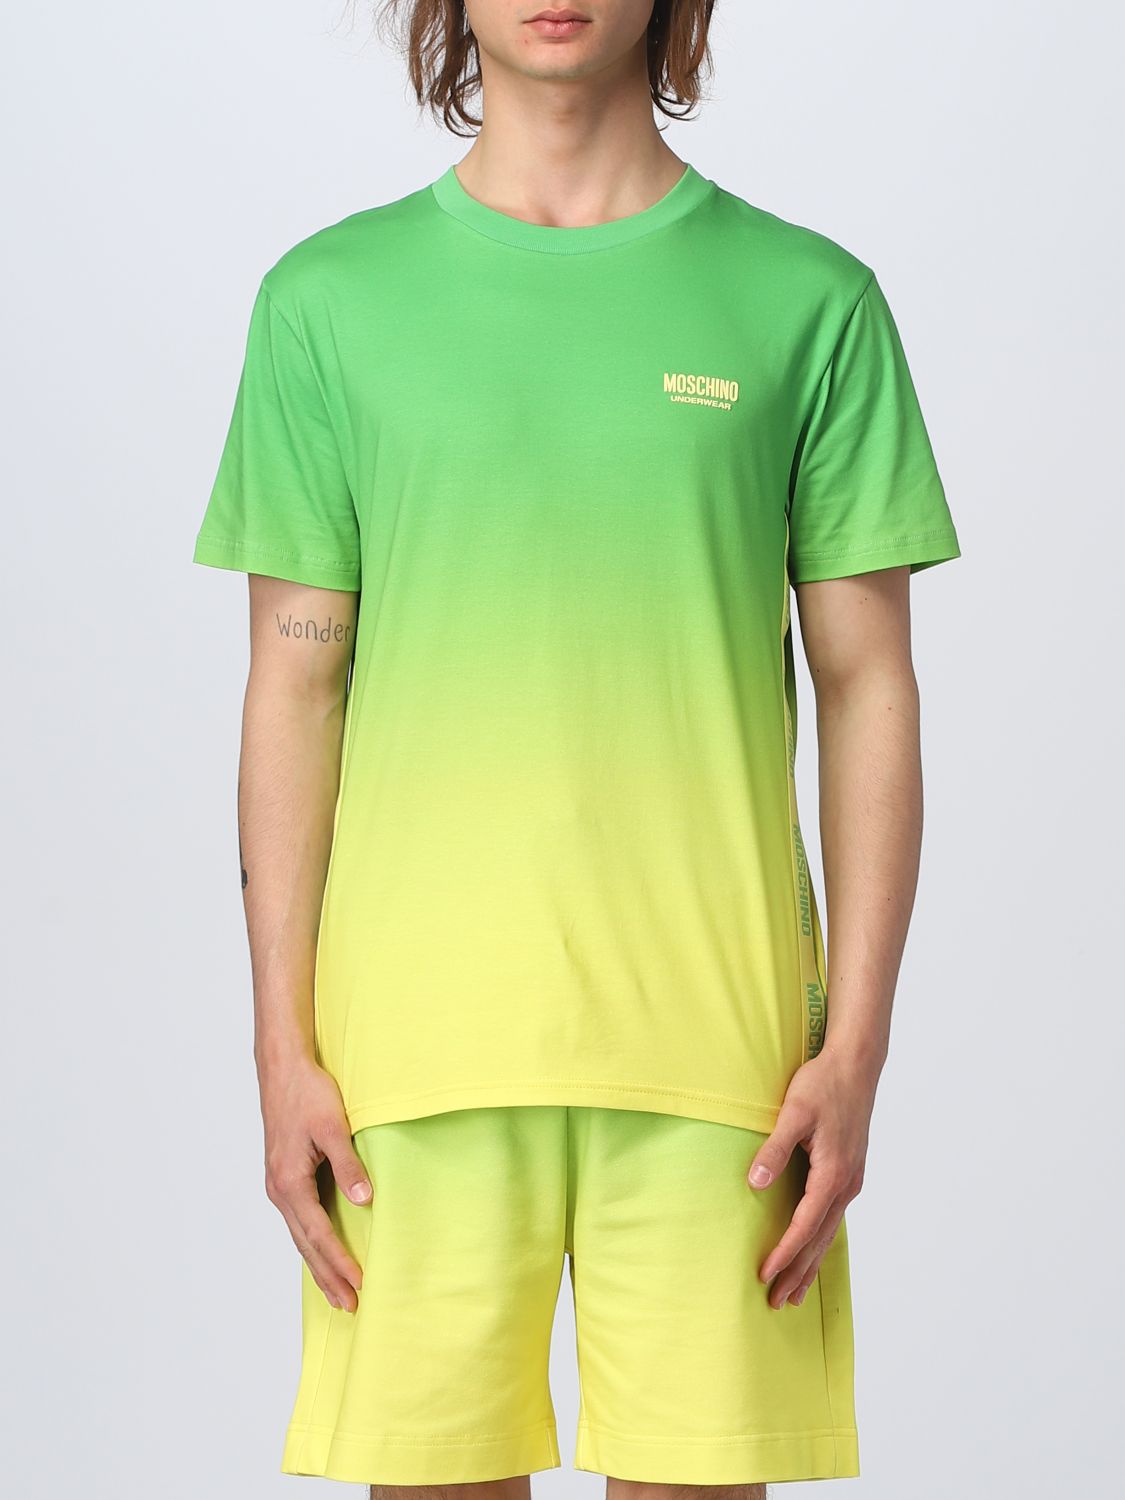 MOSCHINO UNDERWEAR: t-shirt for man - Green | Moschino Underwear t ...